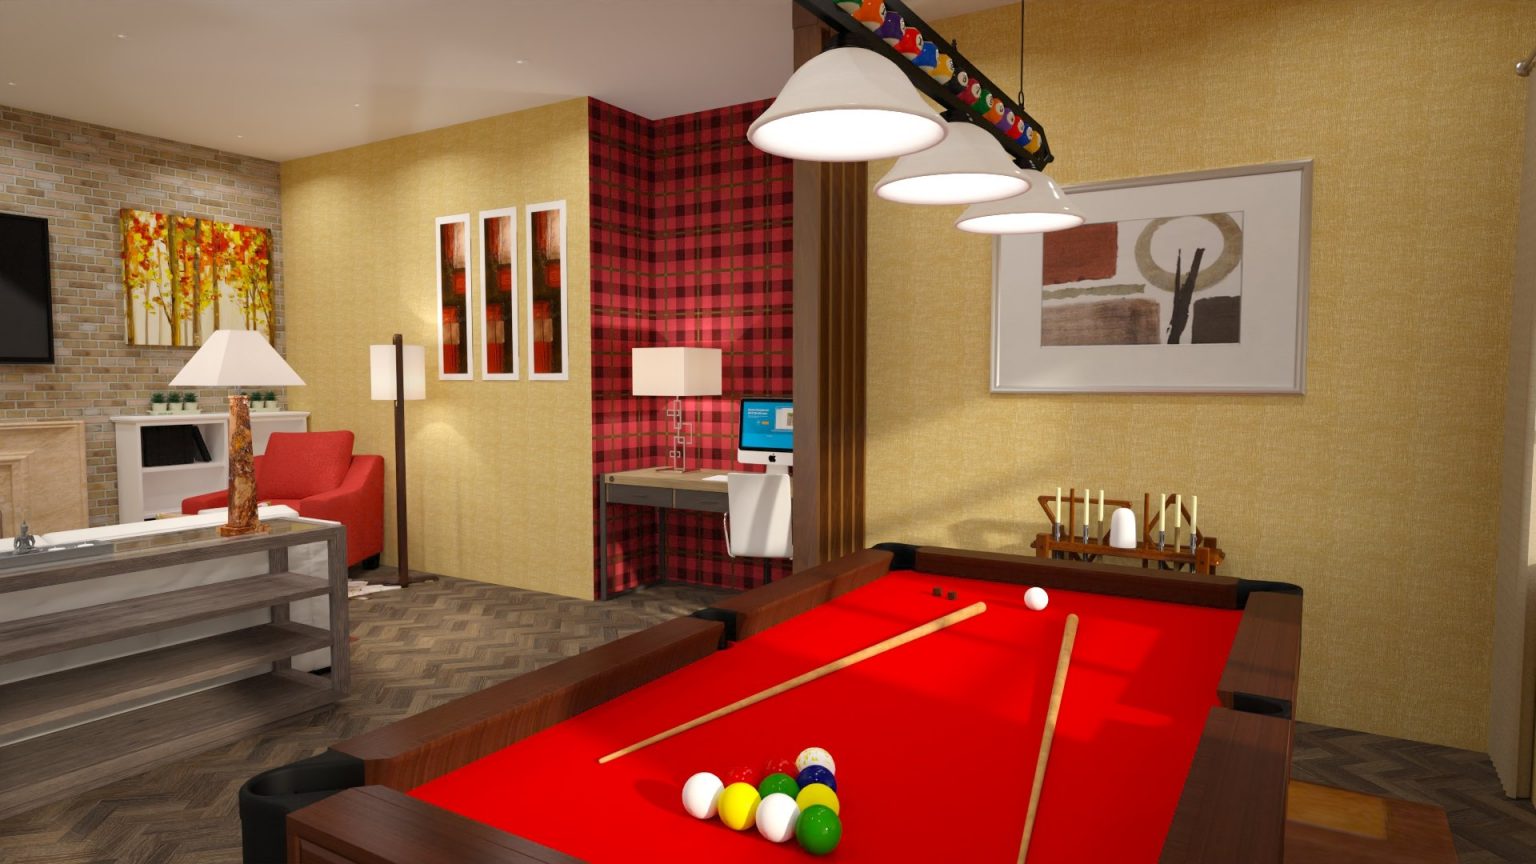 billiards game room floor plan